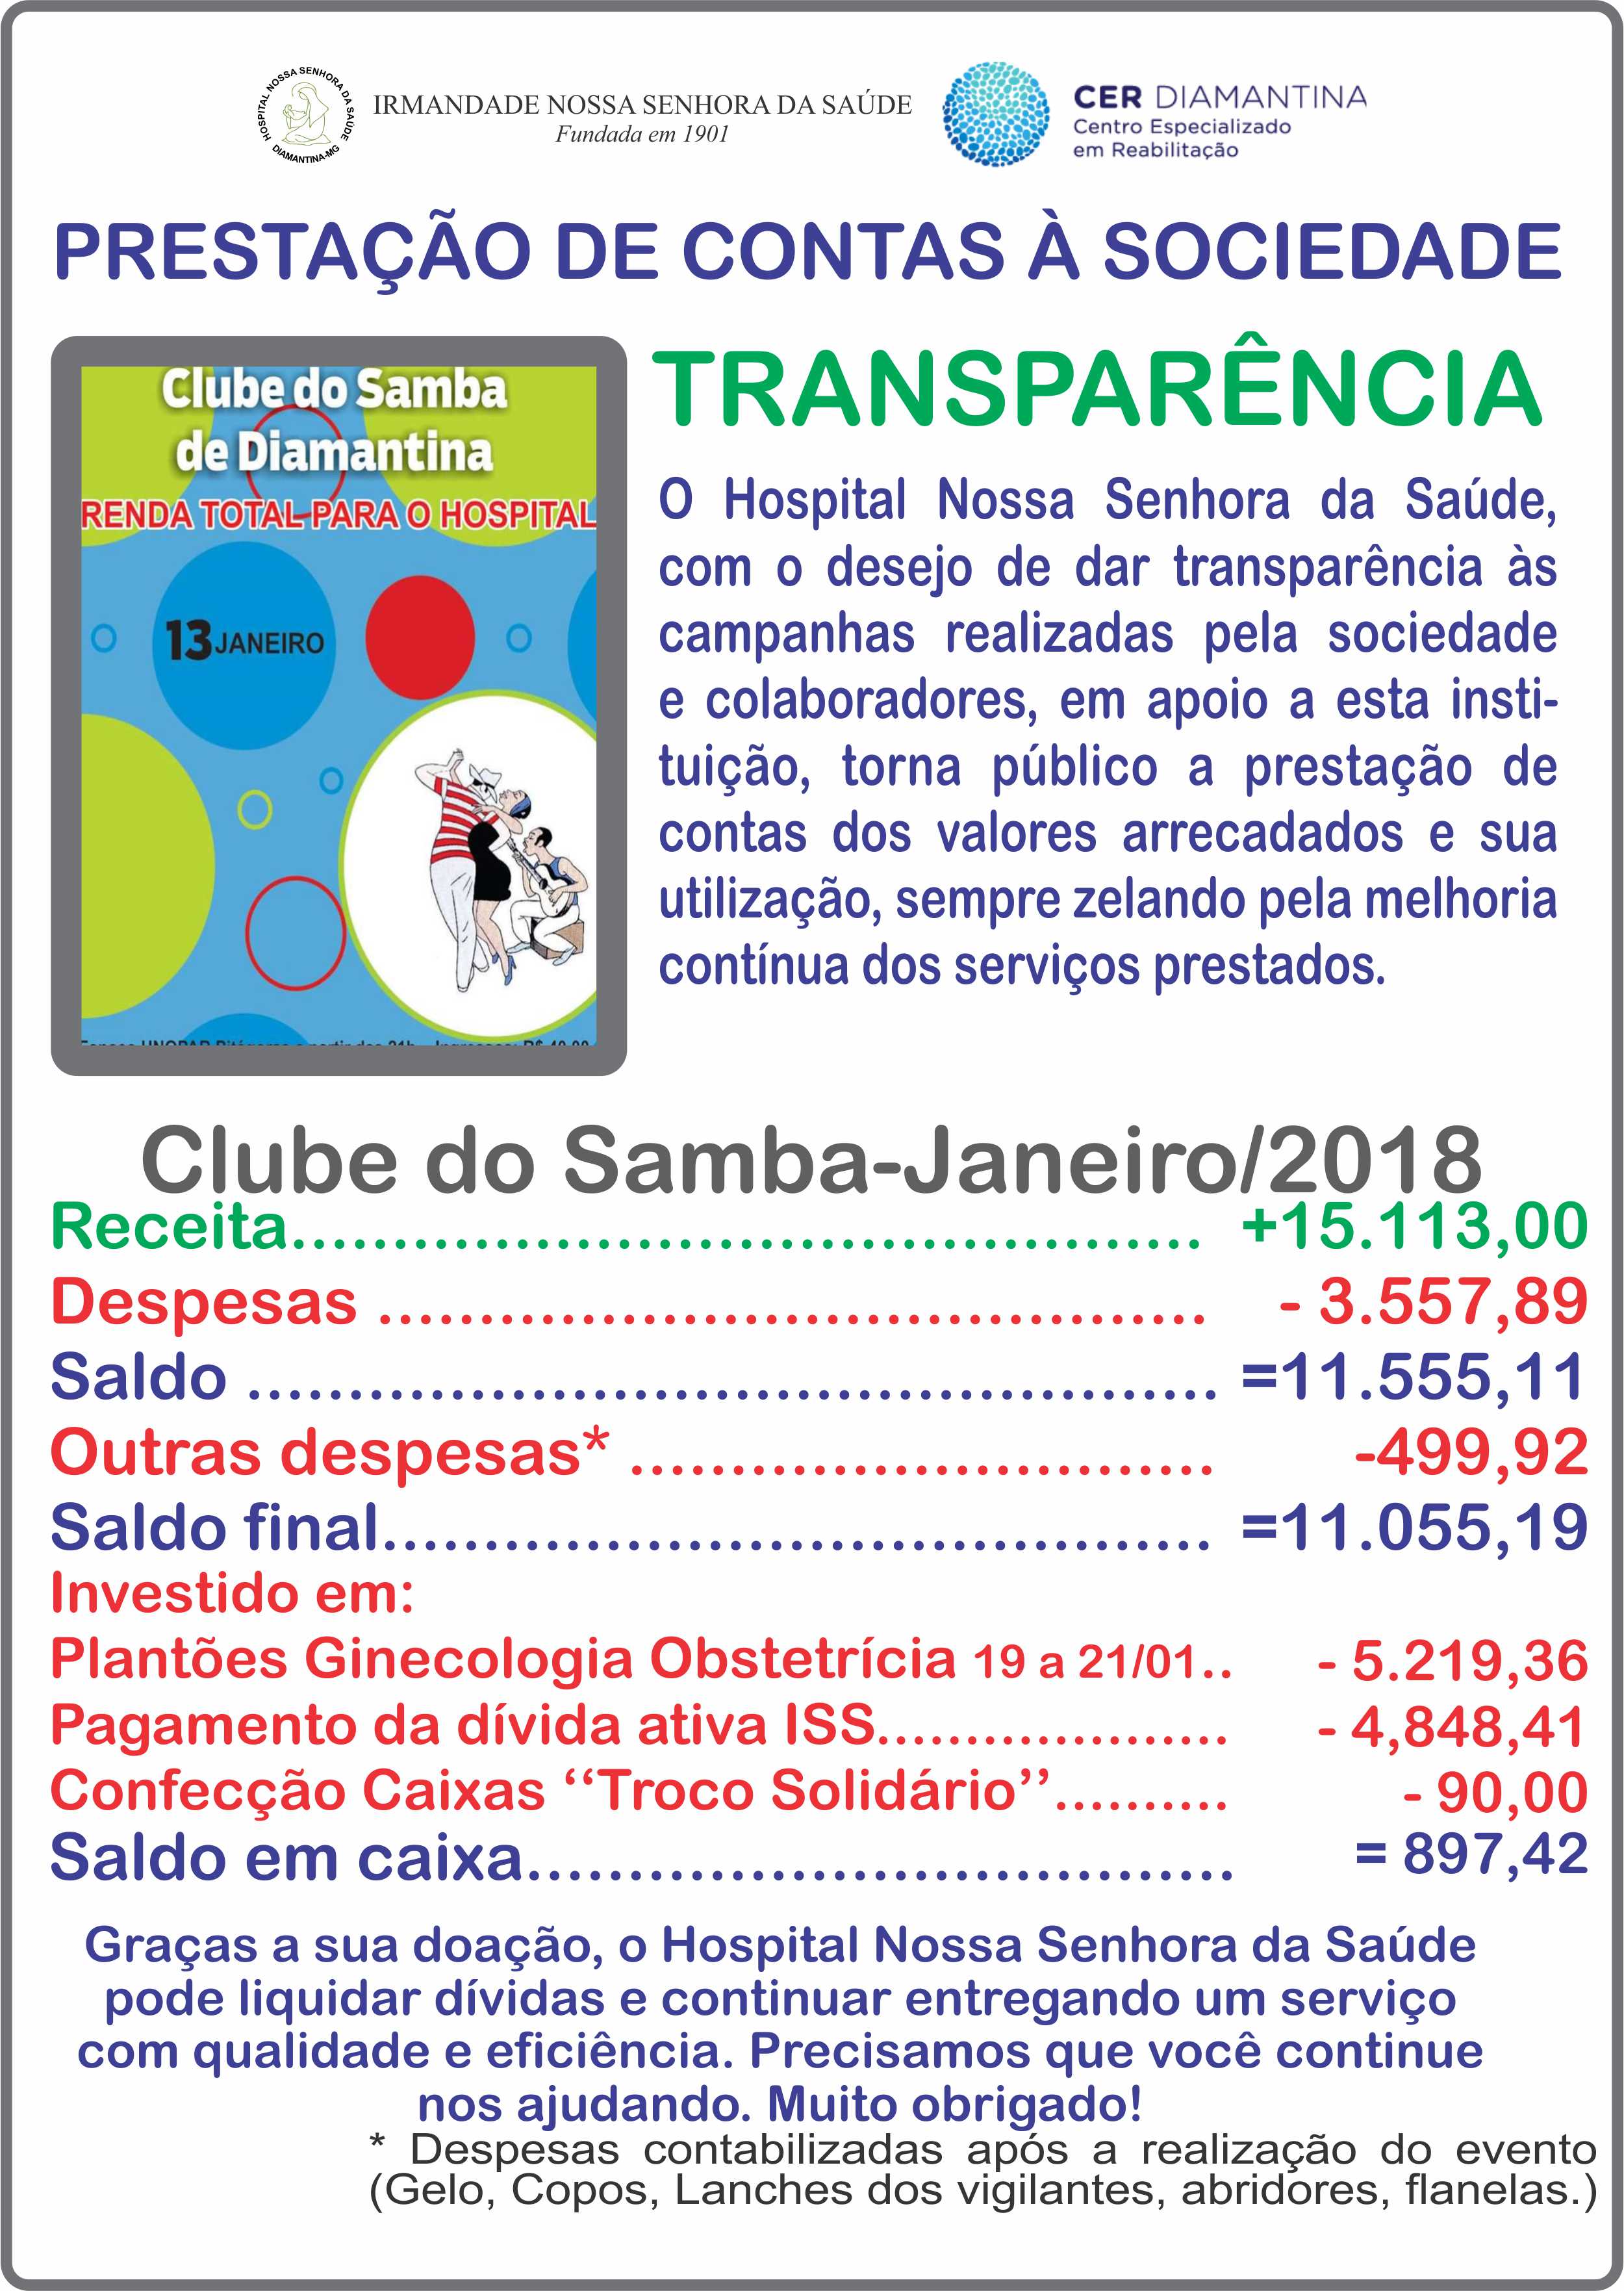 Prestação pública de contas, dos valores arrecadados com o evento "Clube do Samba de Diamantina" e sua utilização.